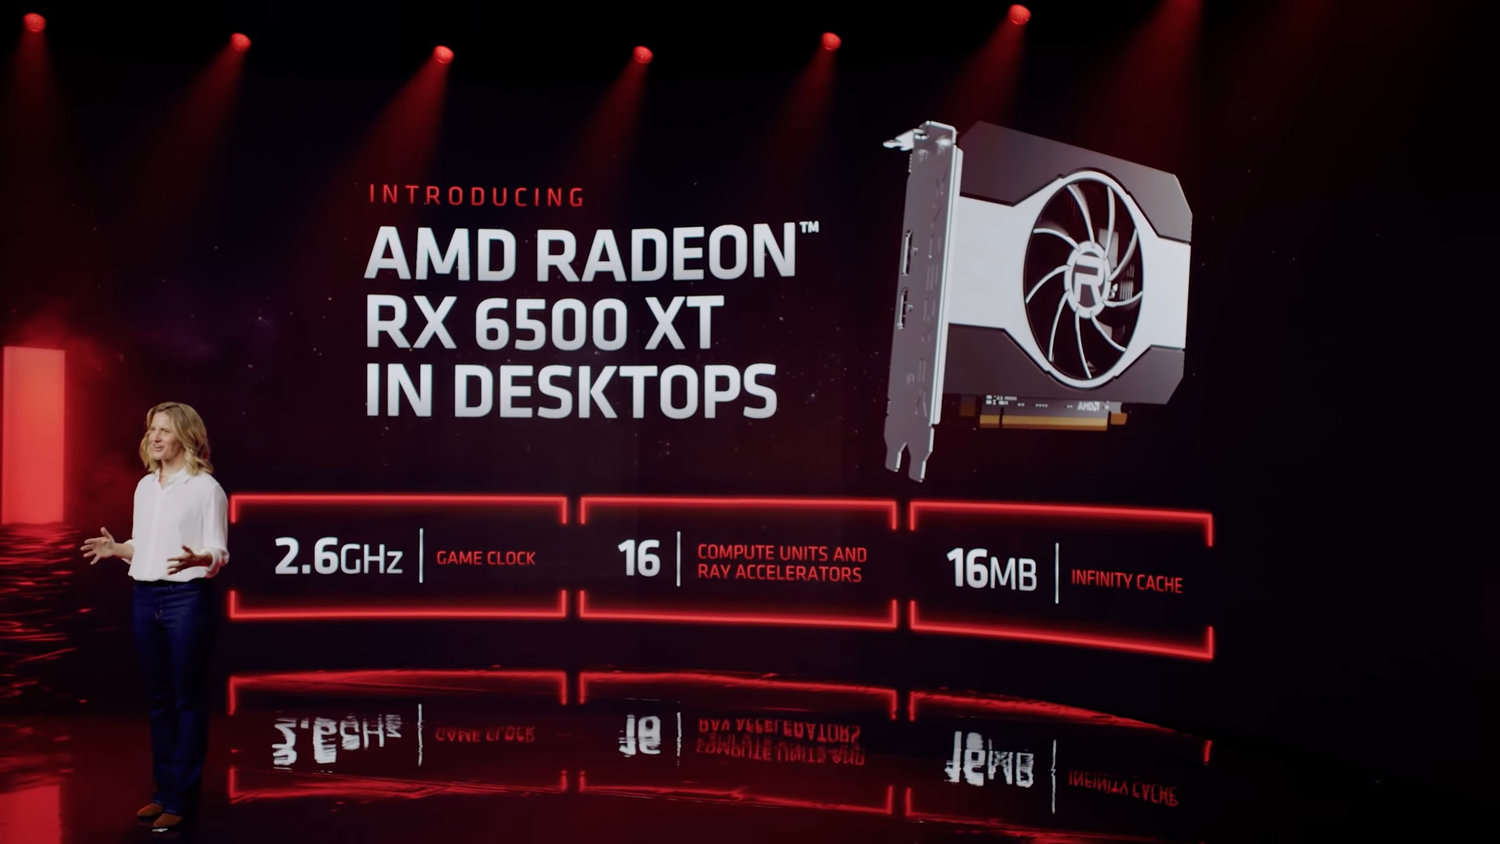 AMD Radeon RX 6500 XT 2